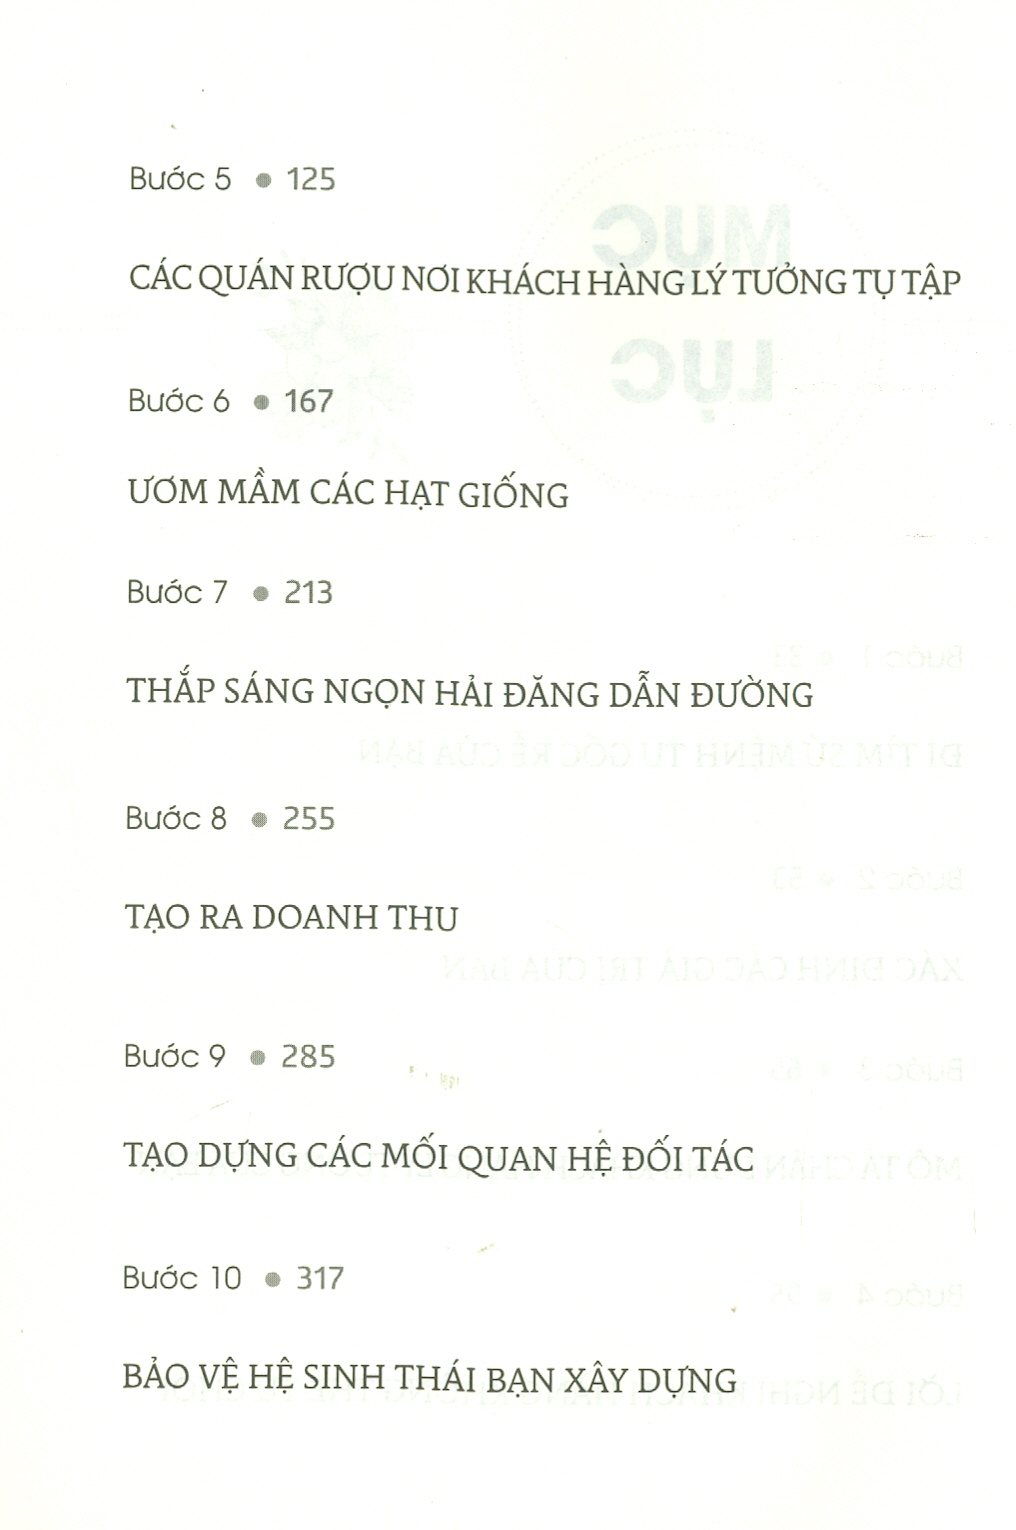 BÙNG NỔ MẠNG LƯỚI KINH DOANH ĐA CHIỀU - Pamela Slim – Thùy Anh dịch – Bách Việt  –NXB Lao Động